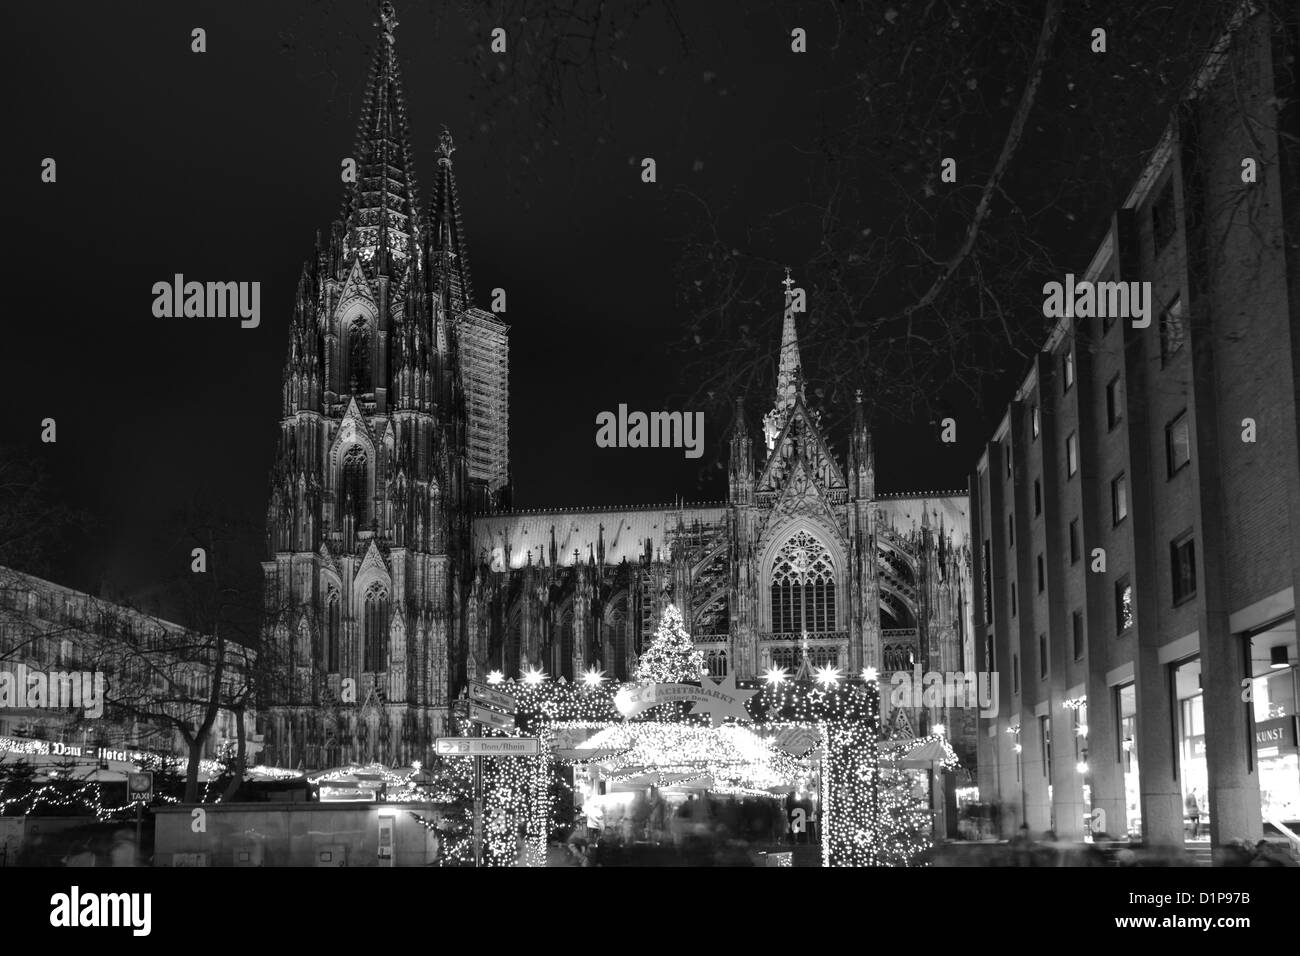 La cathédrale de Cologne et les marchés de Noël de la ville de Cologne, Rhénanie du Nord-Westphalie, Allemagne, Europe Banque D'Images